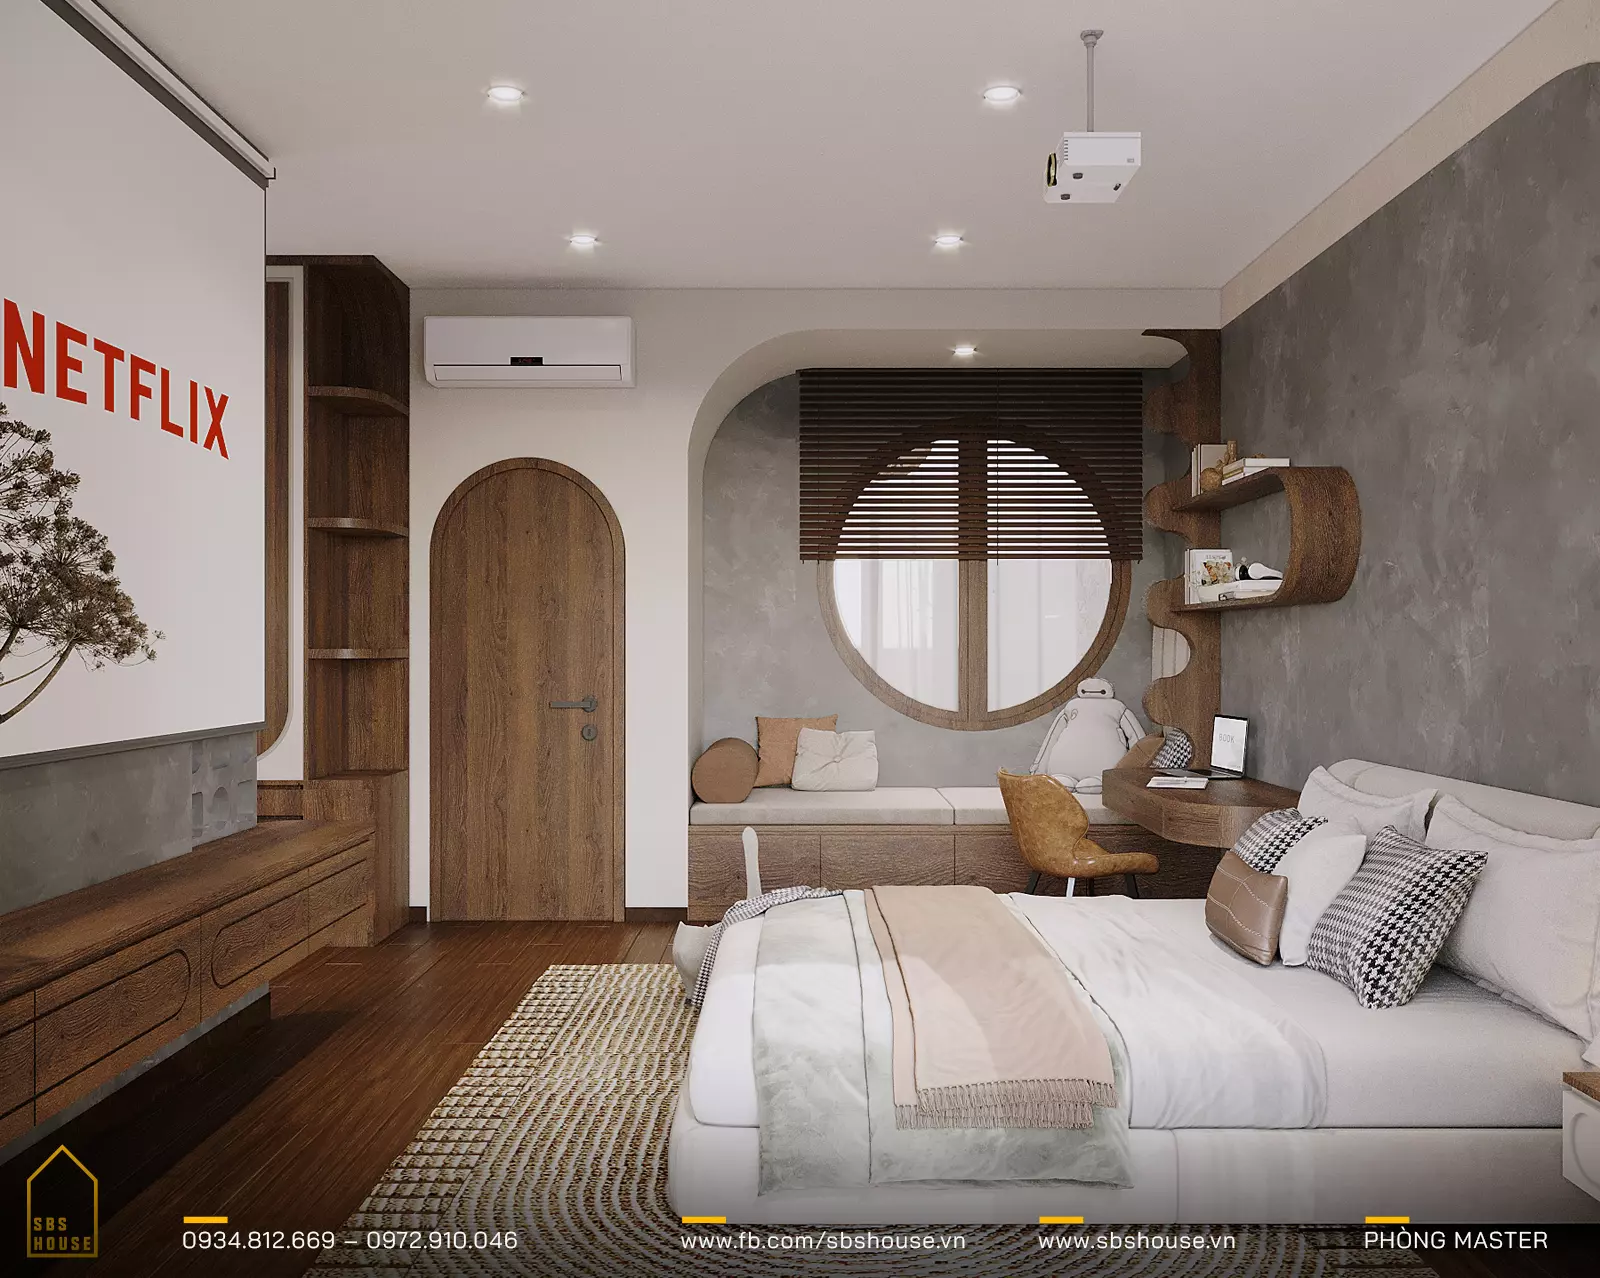 Phòng ngủ chính (phòng master) với không gian riêng tư và tiện nghi cao cấp để đảm bảo sự thoải mái và thư giãn cho chủ nhà.